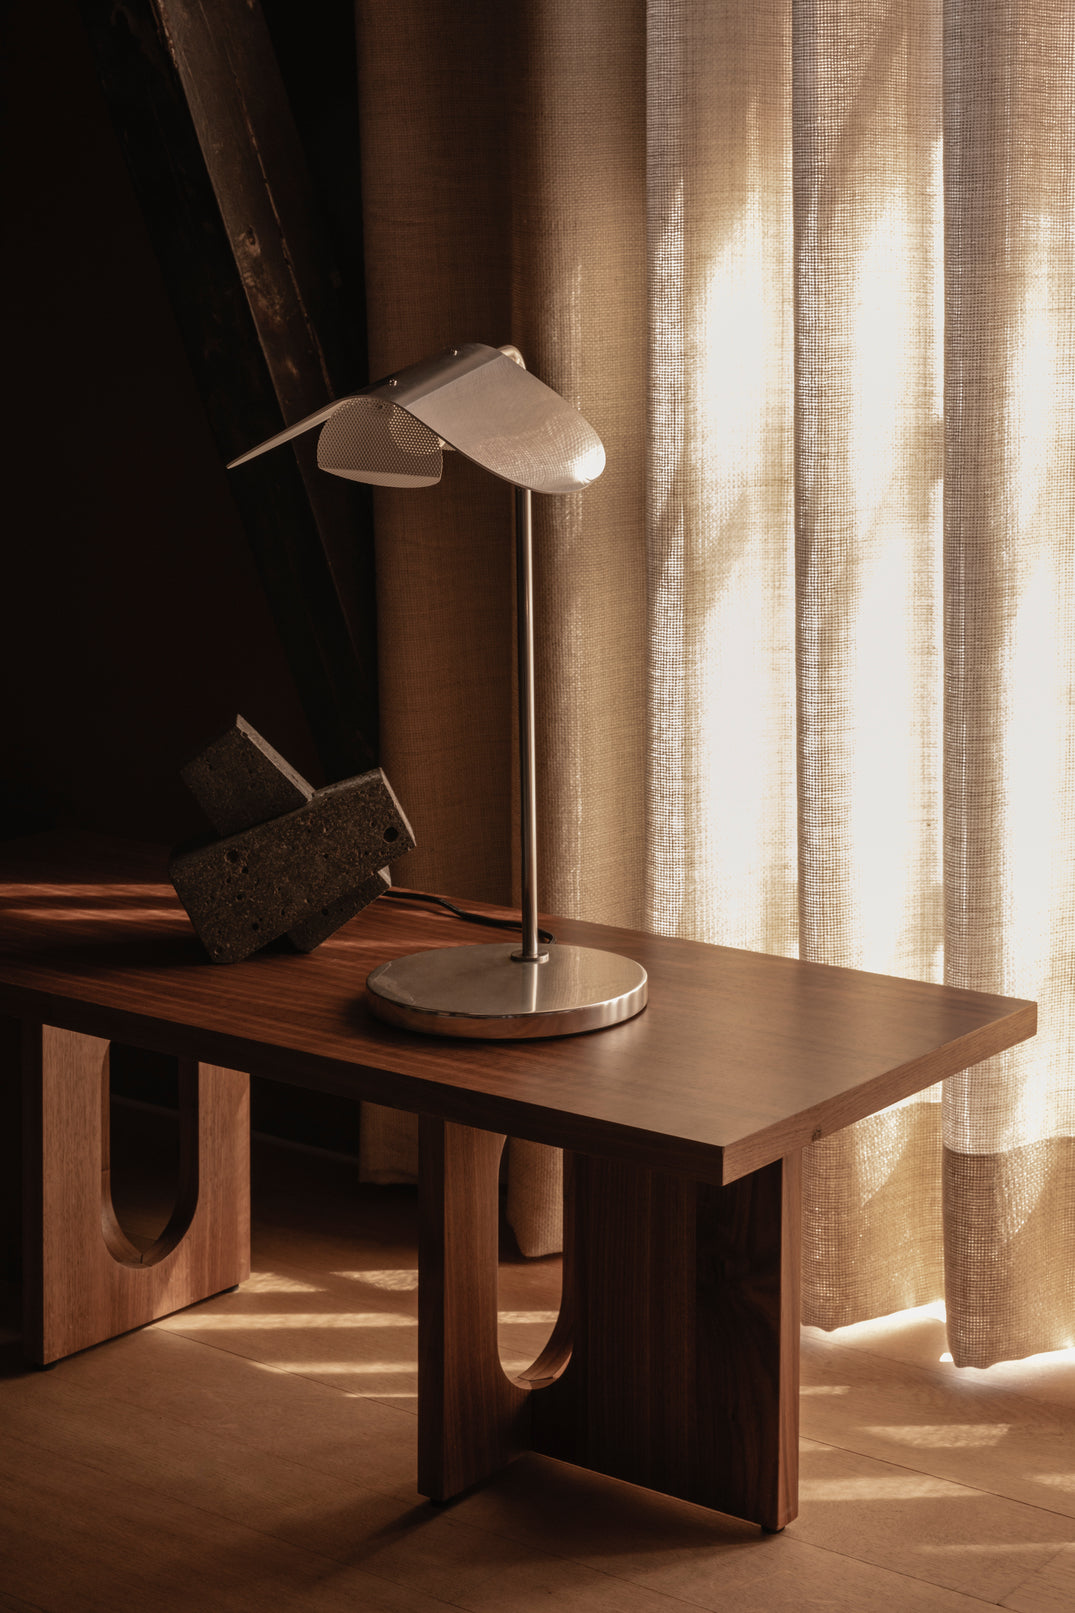 Bilde av sofabordet Androgyne Lounge Table fra Menu i valnøtt mot eikegulv og lyse lingardiner. På bordet står en lampe i stål.